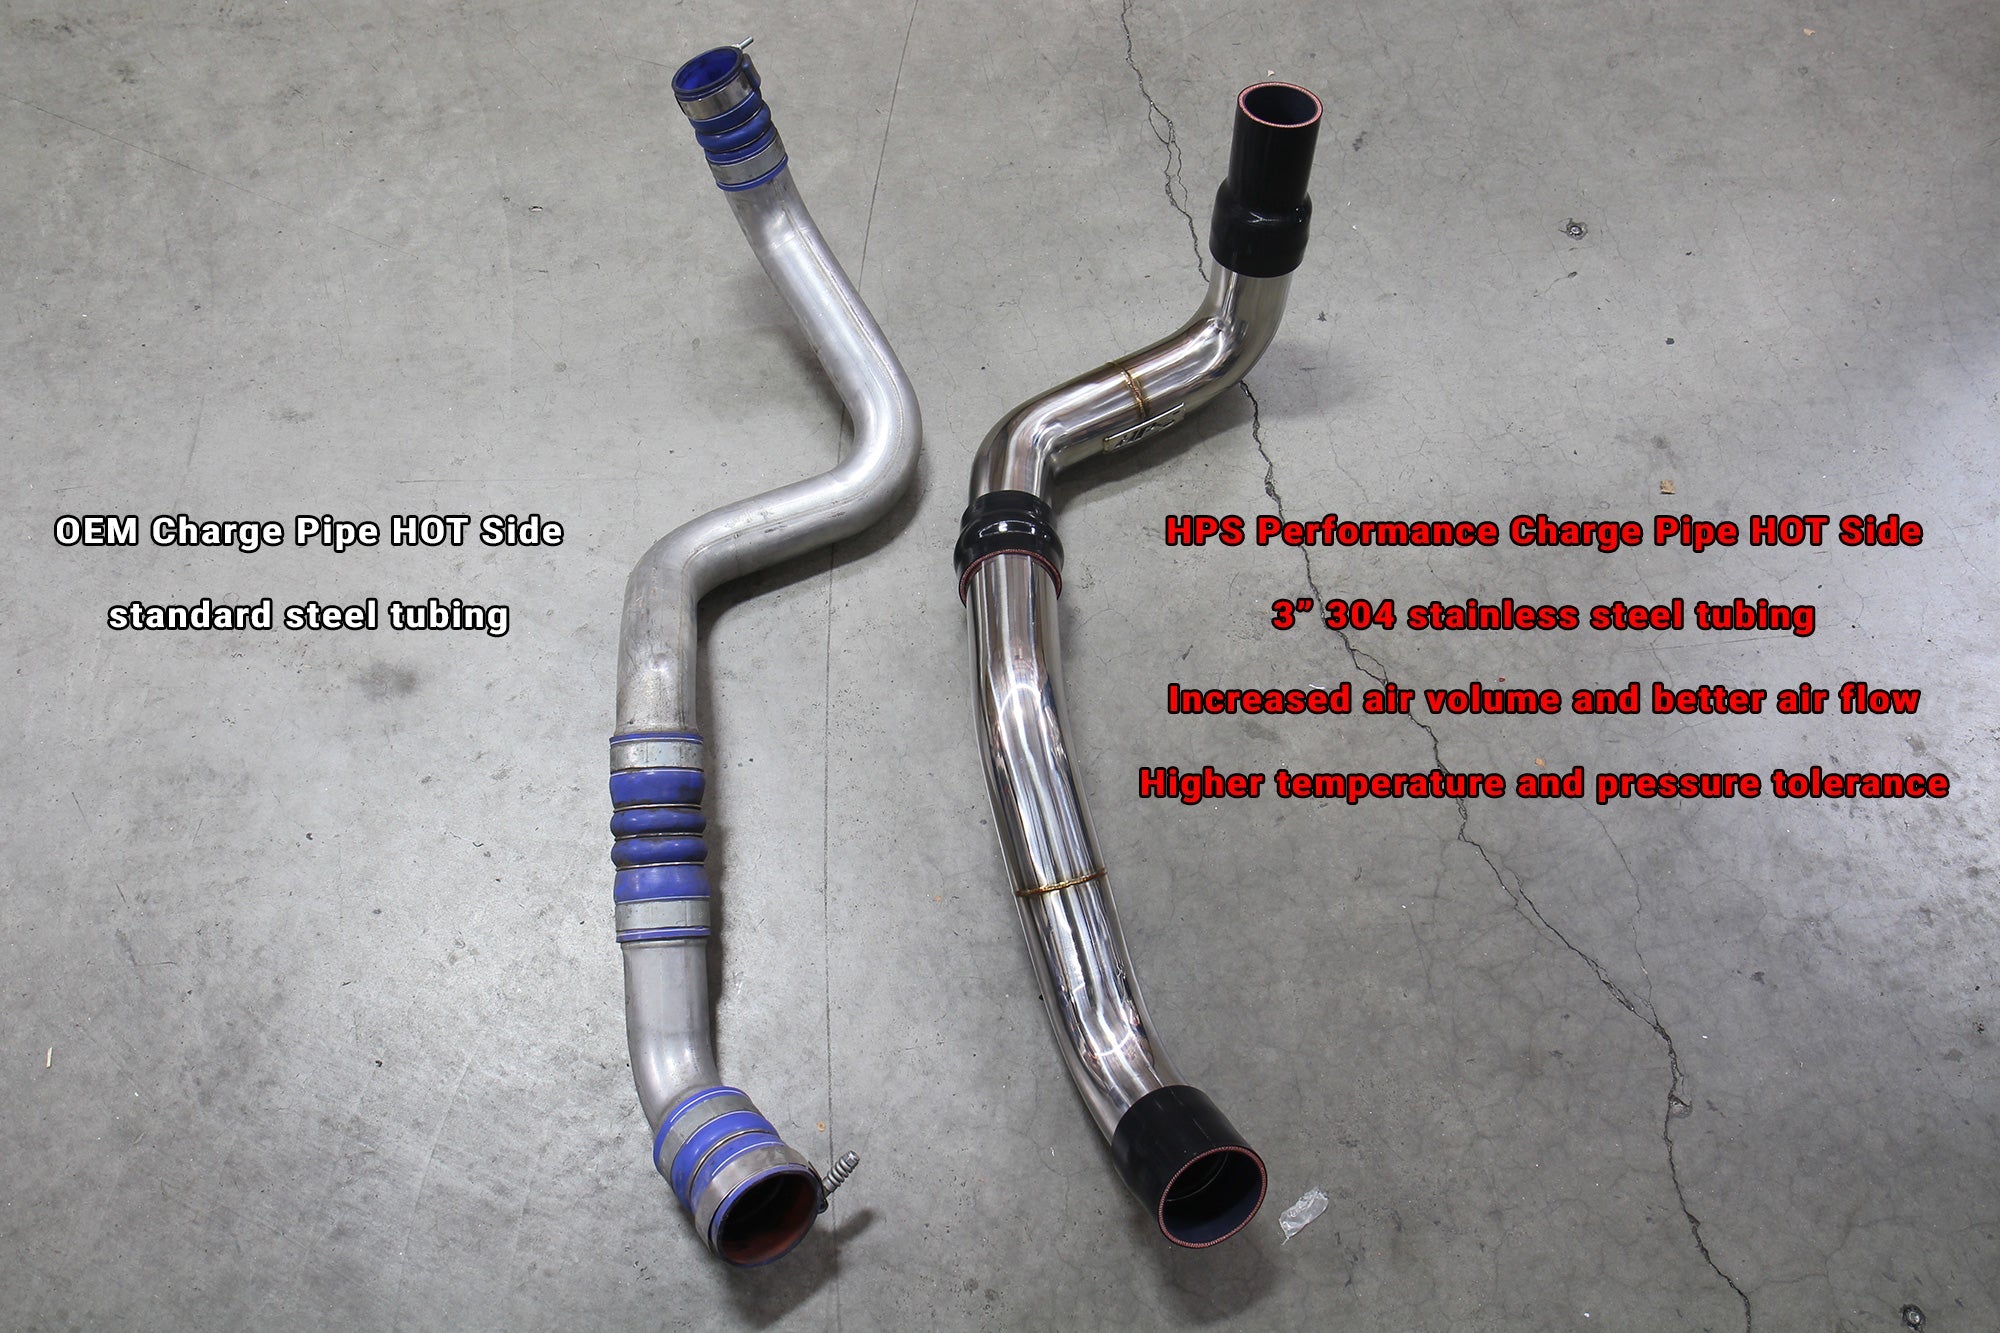 HPS 3" Stainless Steel Charge Pipe Hot Side vs OEM GMC Sierra 2500HD 6.6L Duramax Diesel Turbo LML 17-126P